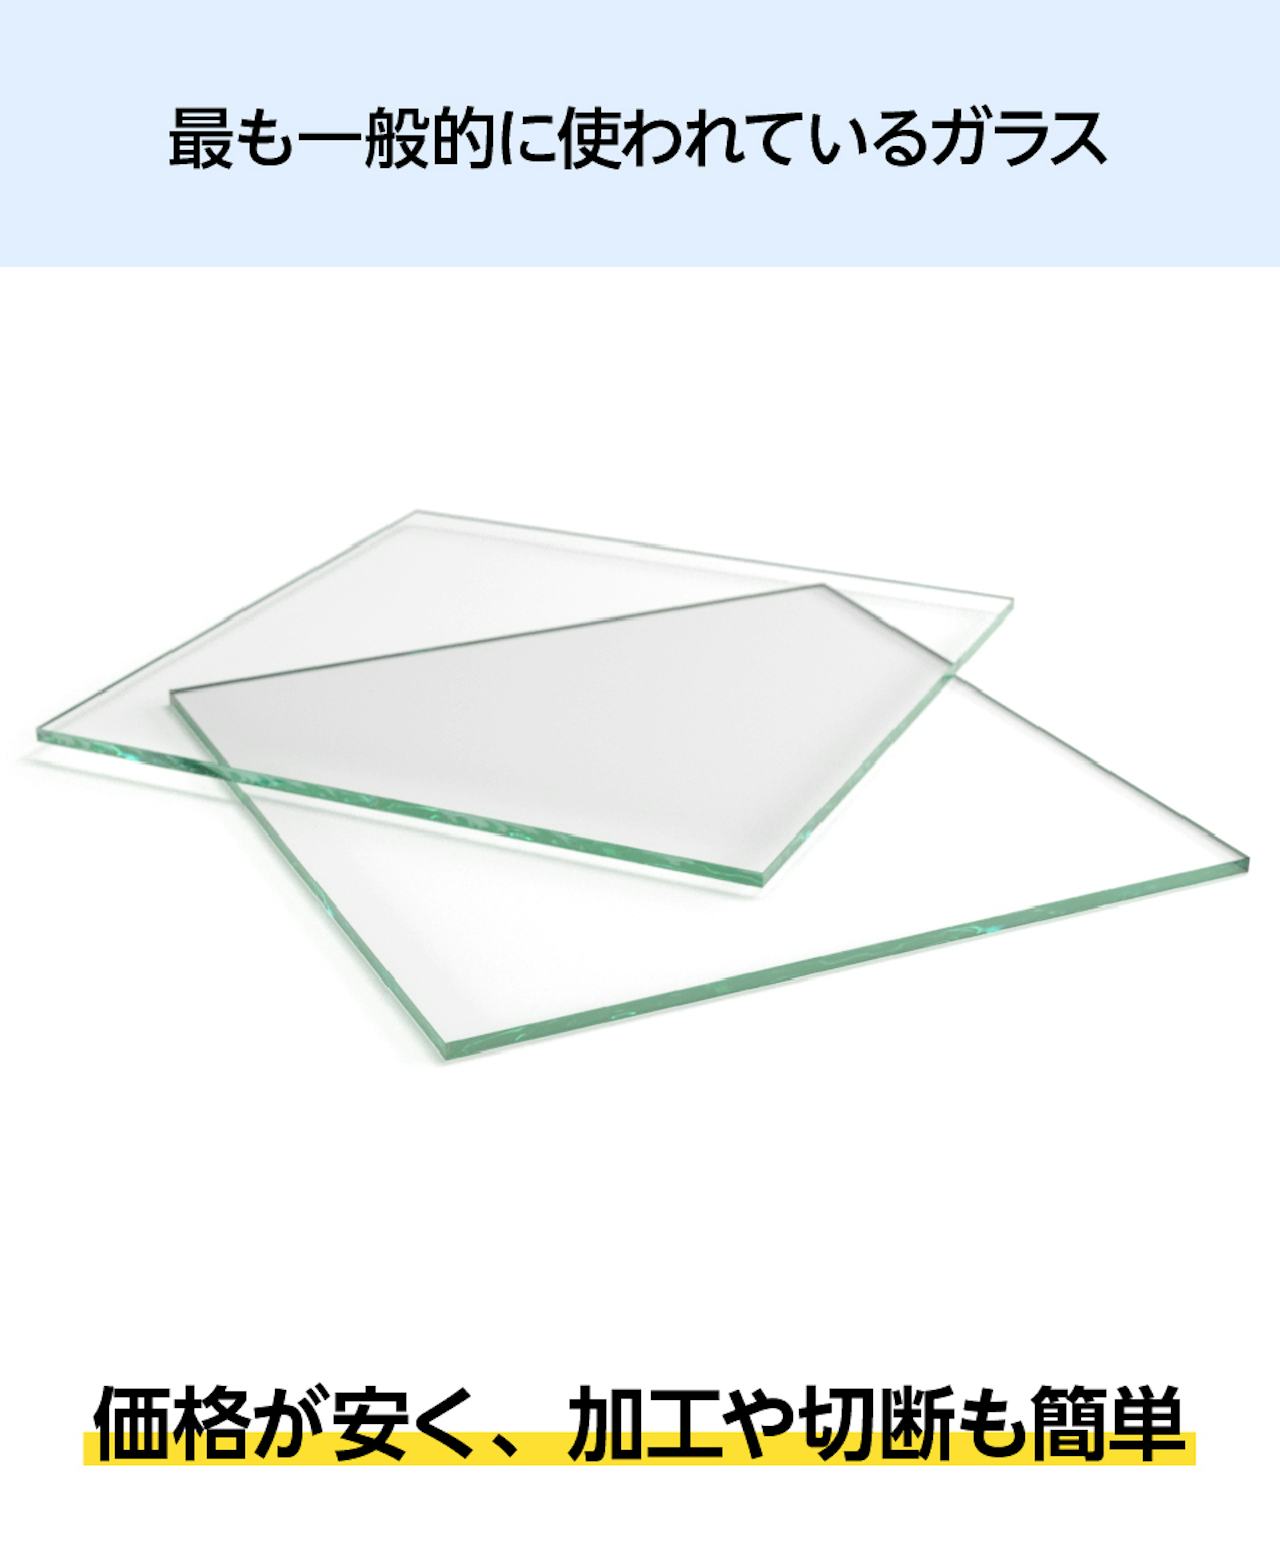 「透明ガラス」はガラスケースに最も一般的に使われている